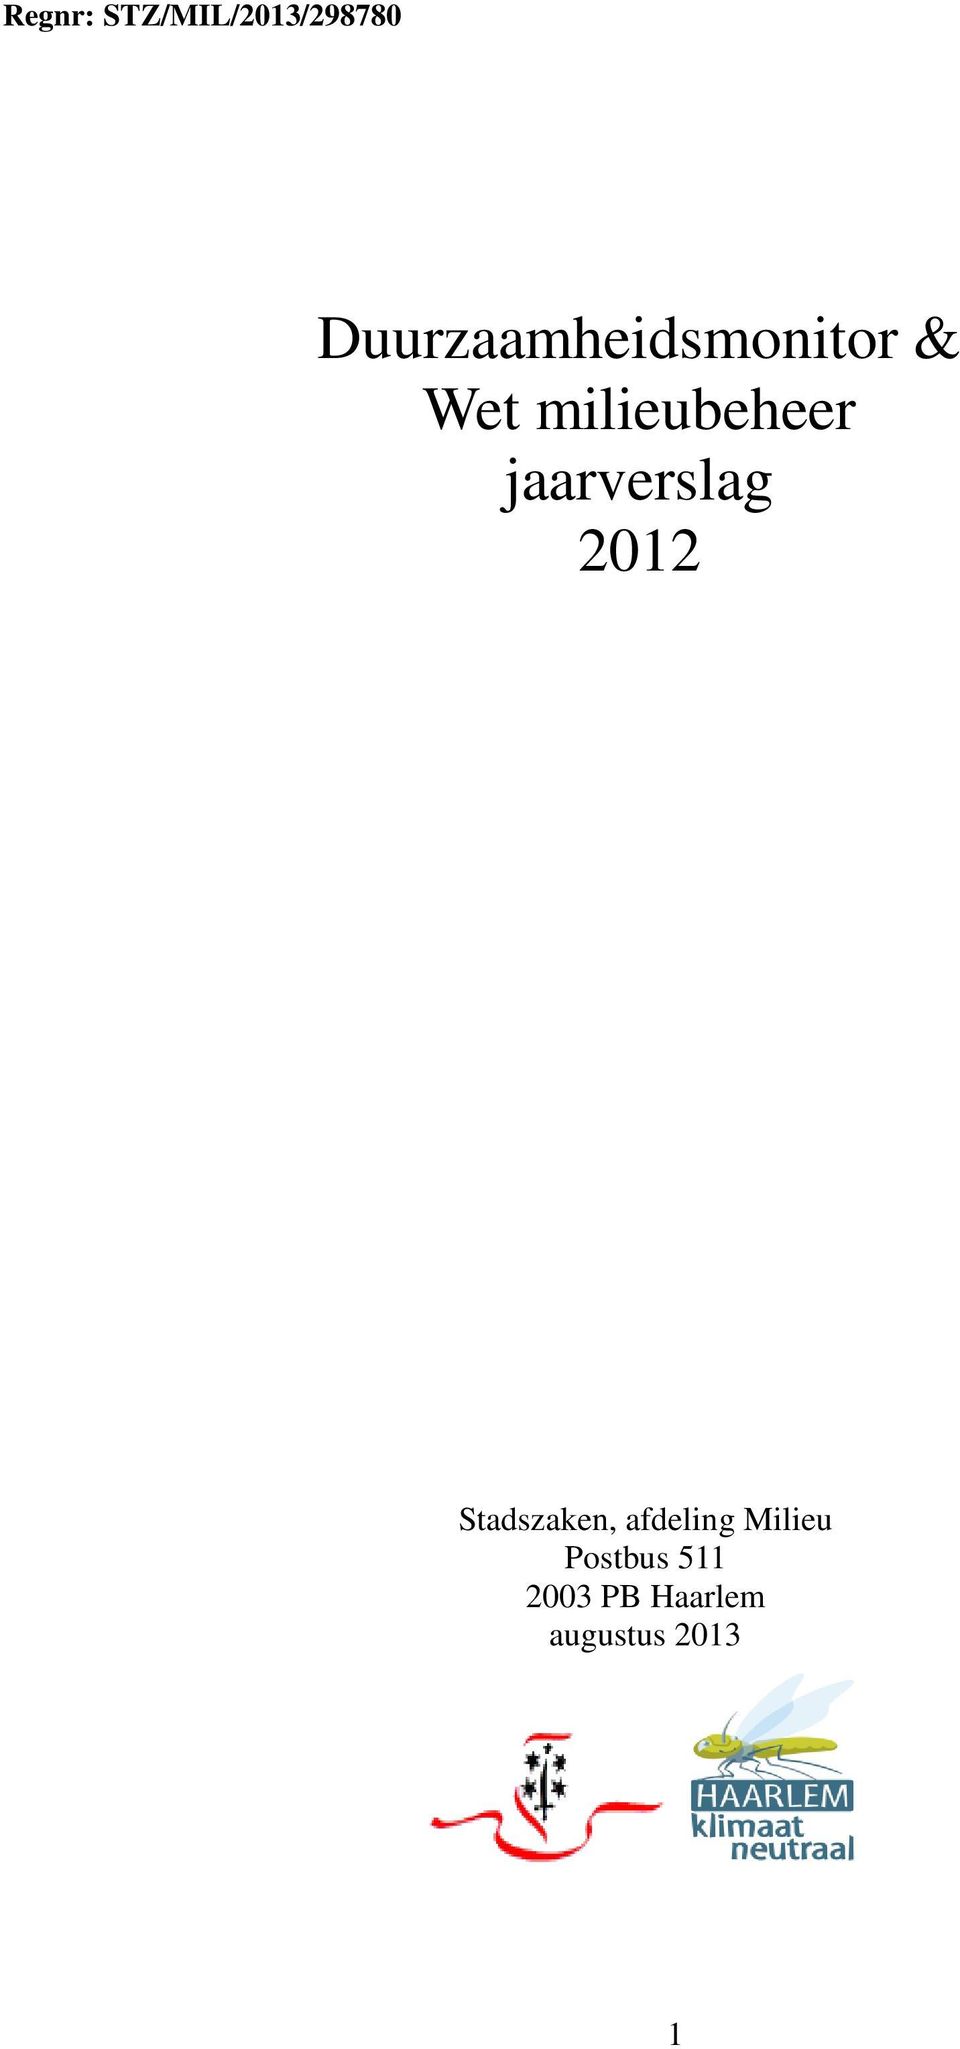 milieubeheer jaarverslag 2012